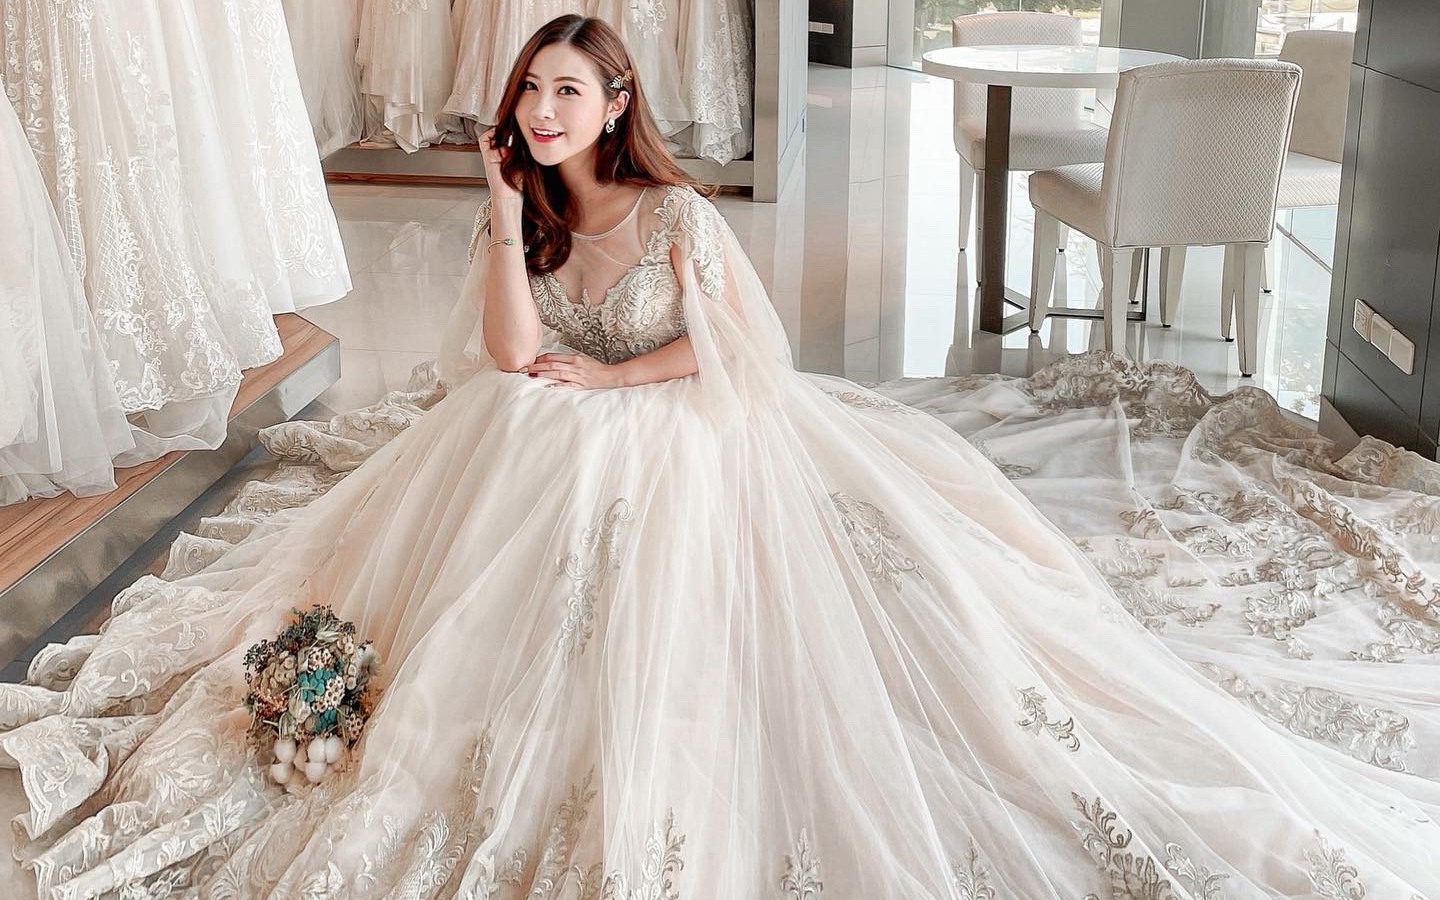 Nhà thiết kế nổi tiếng: 5 BÍ QUYẾT chọn váy cưới cho hôn lễ cực đắt giá mà cô dâu nào cũng nên biết!